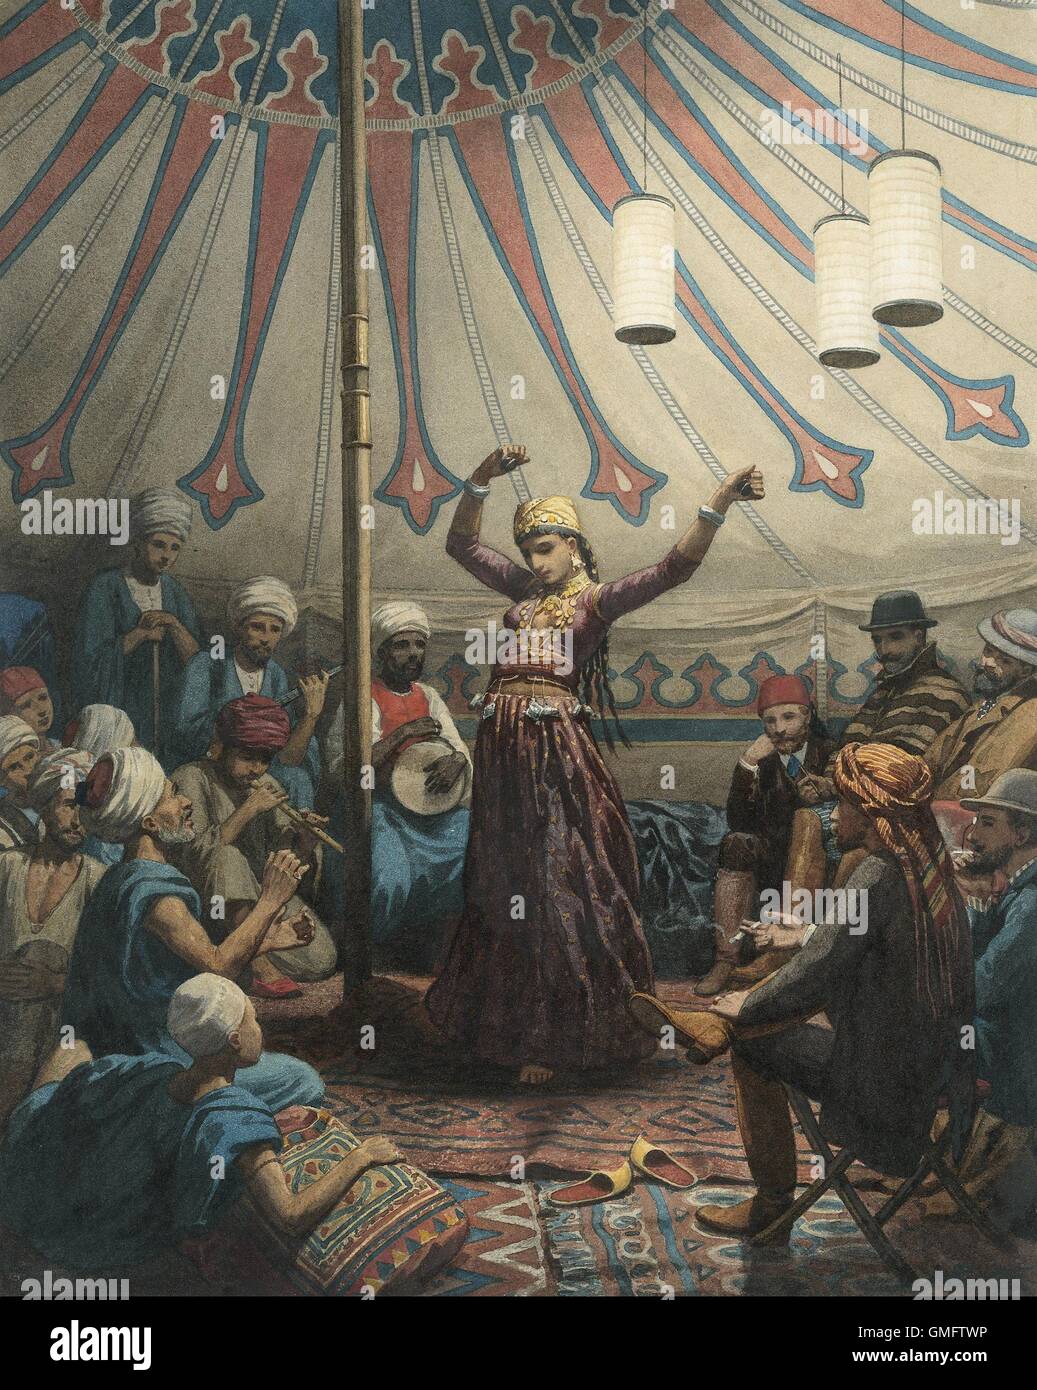 Danseuse égyptienne dans une tente, par Willem de Famars Testas, 1863, la peinture hollandaise, l'aquarelle. Jeune femme dancer avec le musicien pour l'auditoire d'arabes et européens. (BSLOC 2016 1 17) Banque D'Images